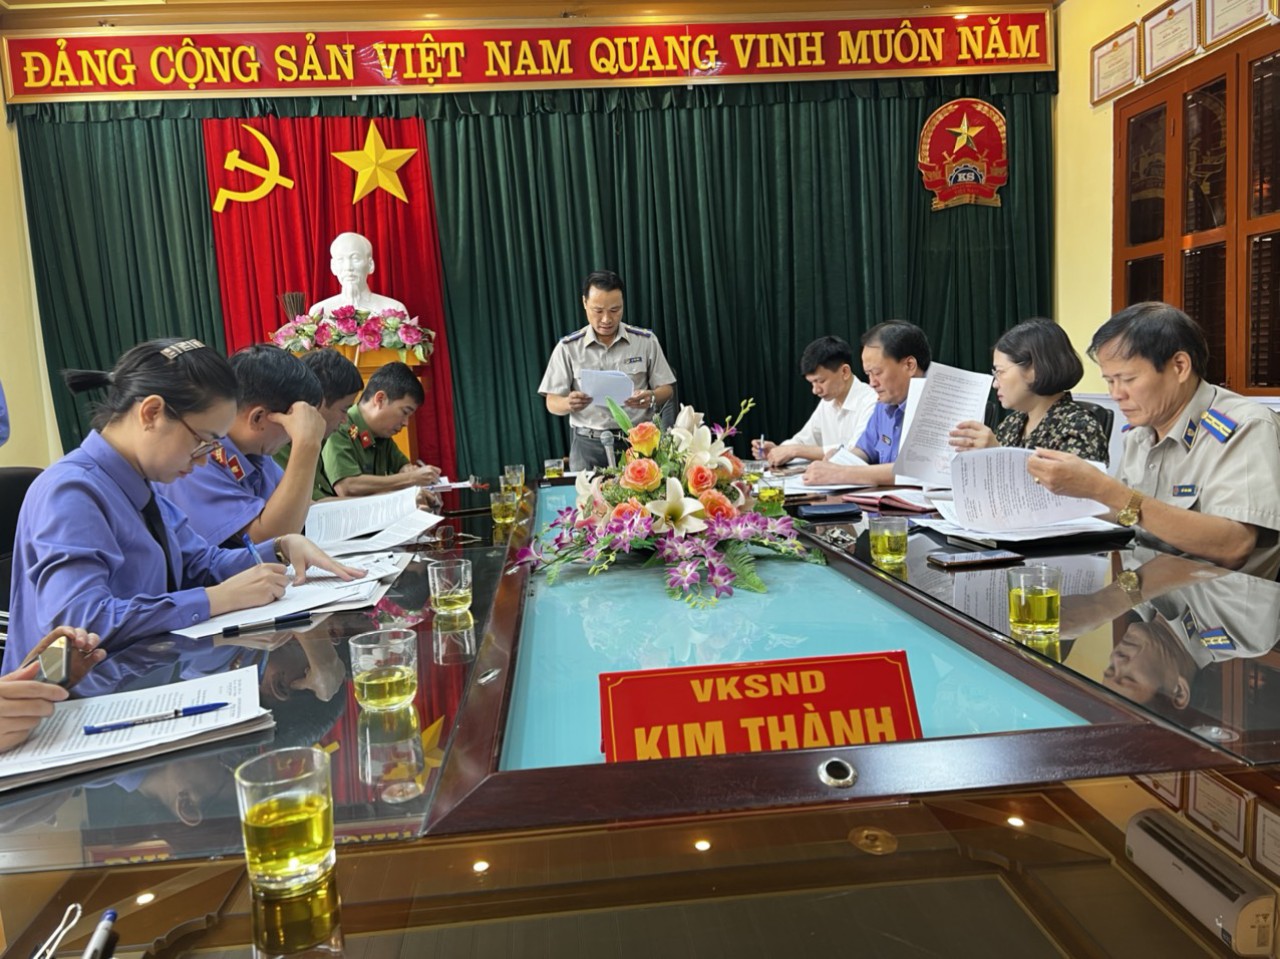 Kiểm tra công tác xử lý, giải quyết khiếu nại, tố cáo trong hoạt động tư pháp đối với VKSND, Tòa án nhân dân, Công an và Chi cục THADS huyện Kim Thành.